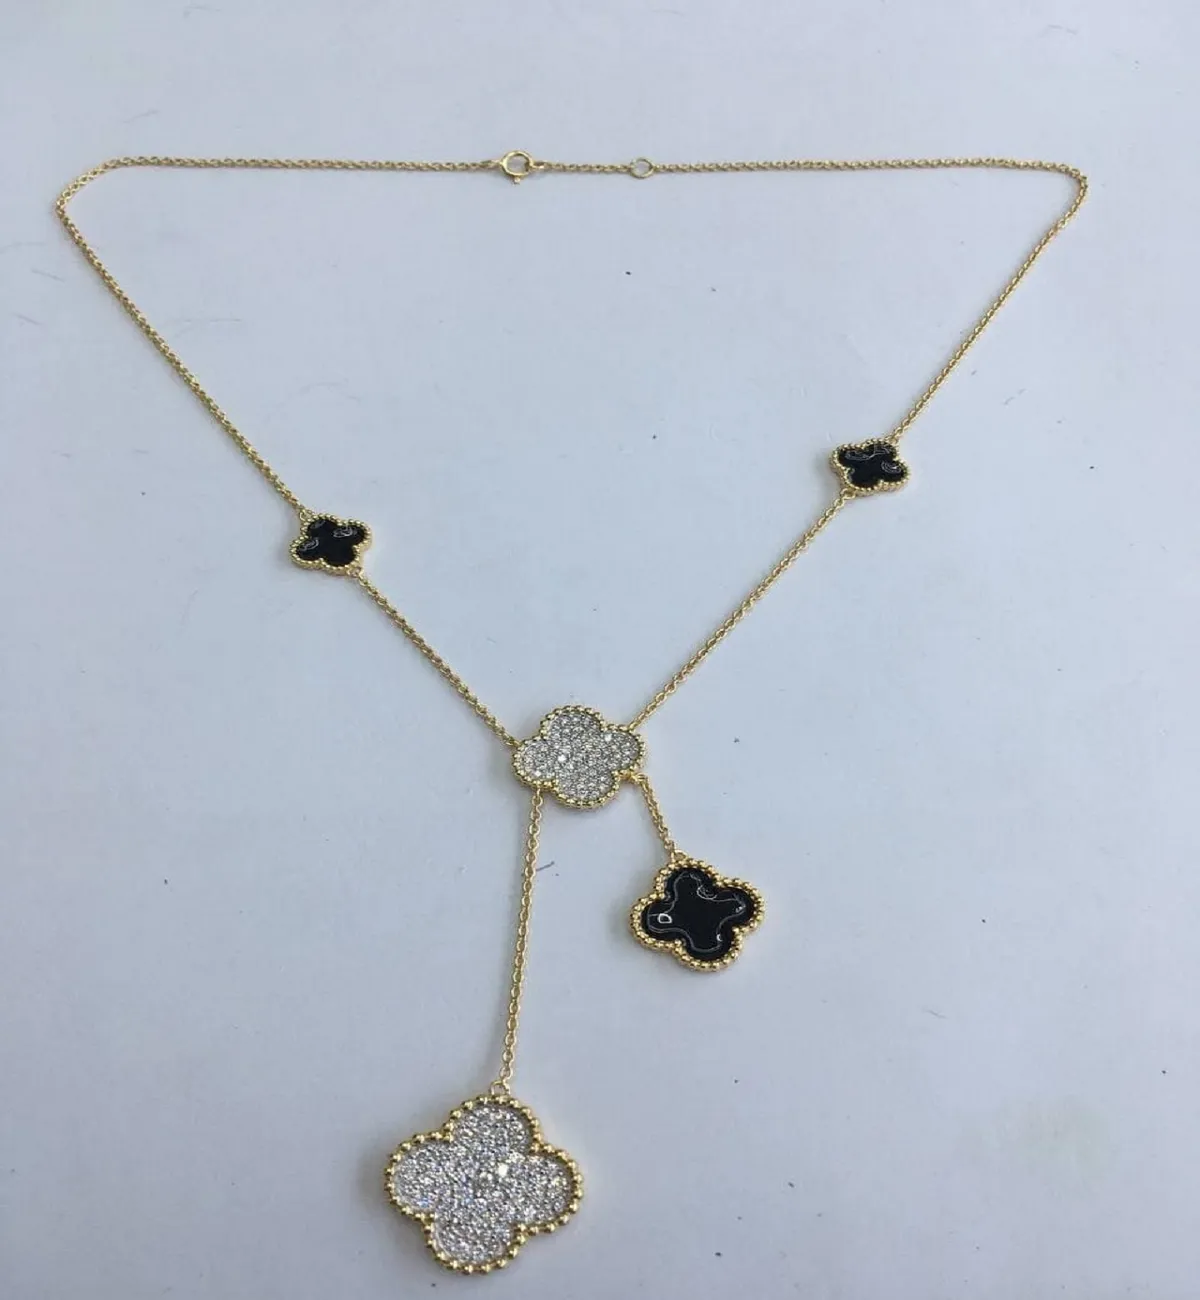 Kalung Bertatahkan Berlian Asli Desain Bunga Gaya Berkelas Eksklusif untuk Wanita dengan Emas 18Kt.